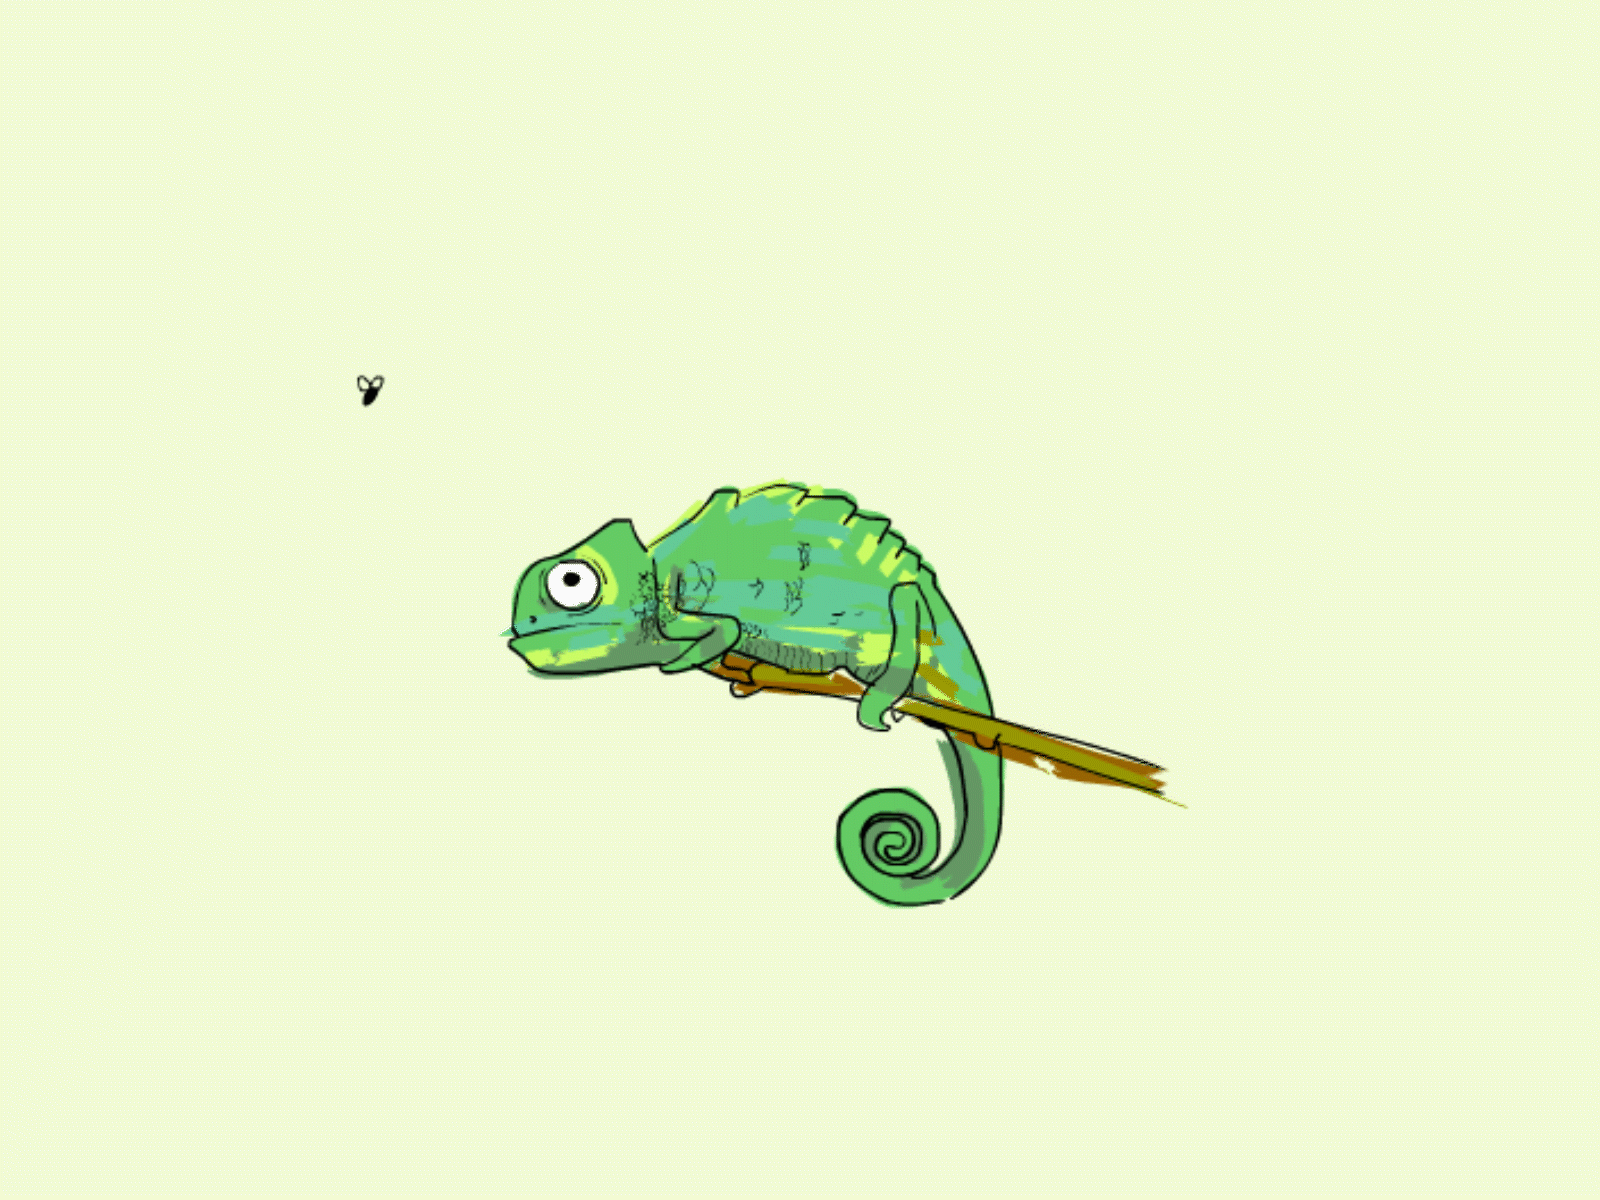 Chameleon frame to frame animation by Plessing Markus 🏔 on Dribbble